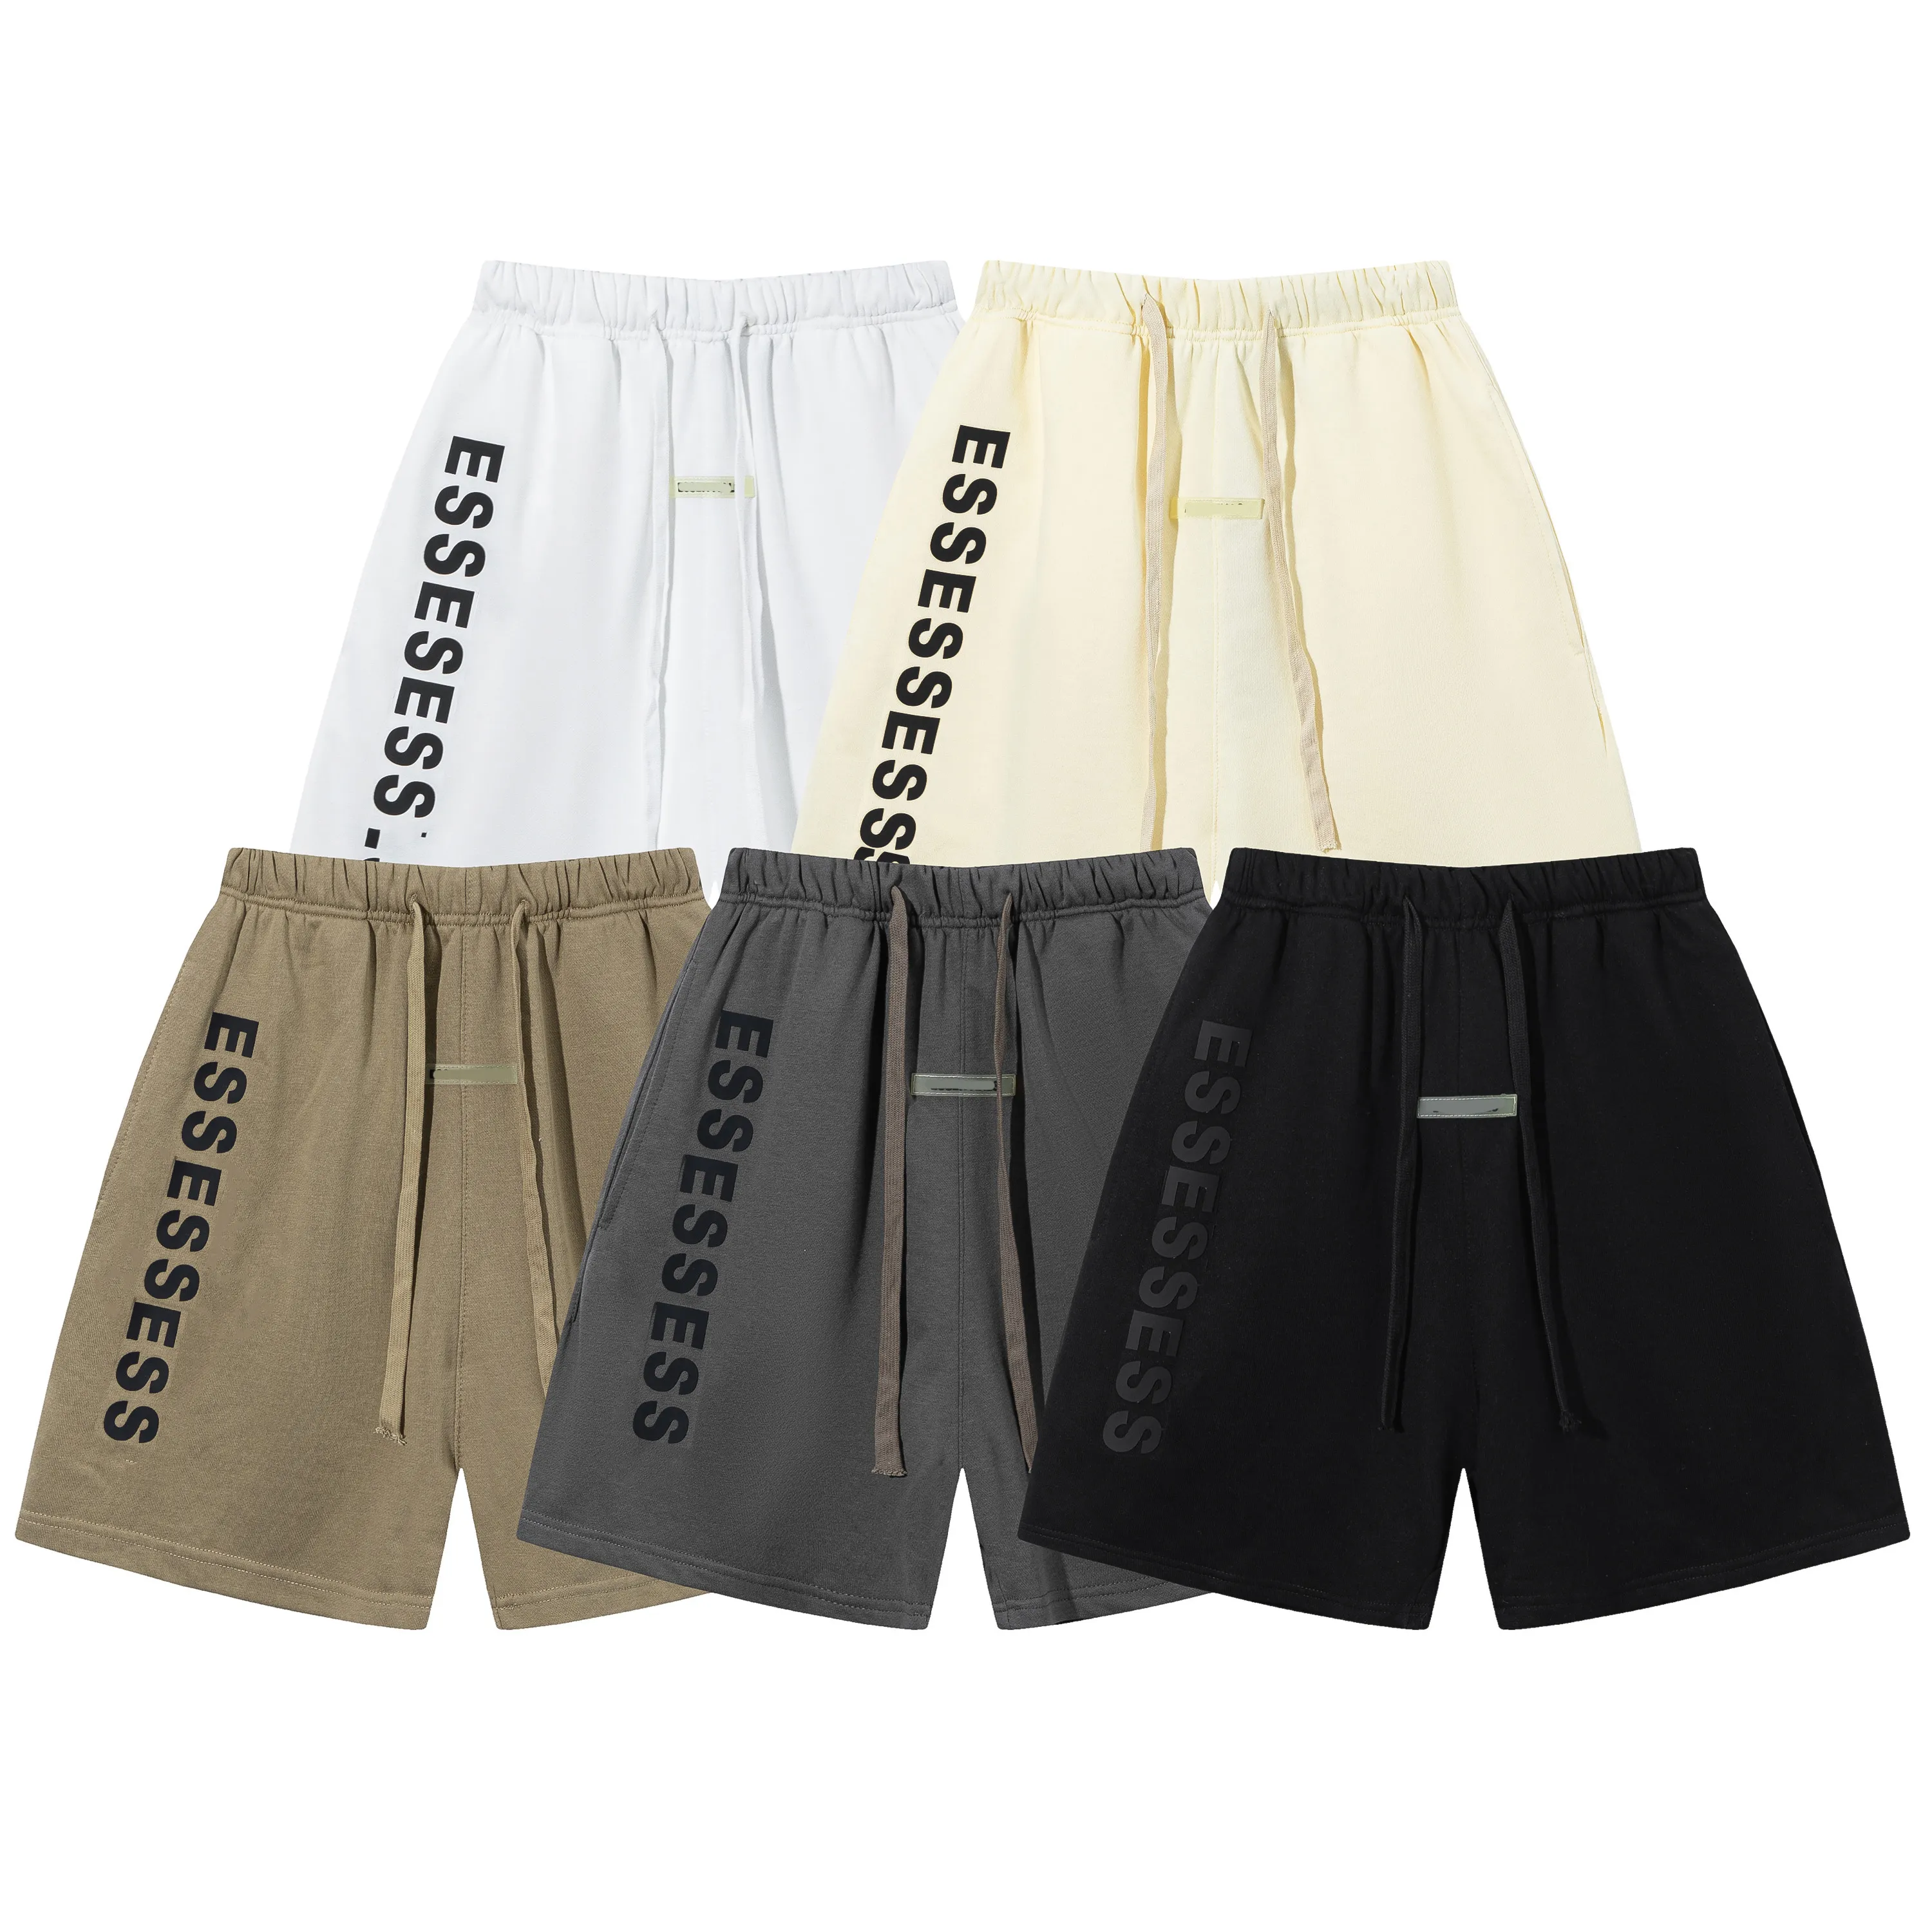 Men's High Quality Simple Designer Cotton Fashion Sports Hoodie Quarter Pants Letter 3D Jogging Shorts for Women